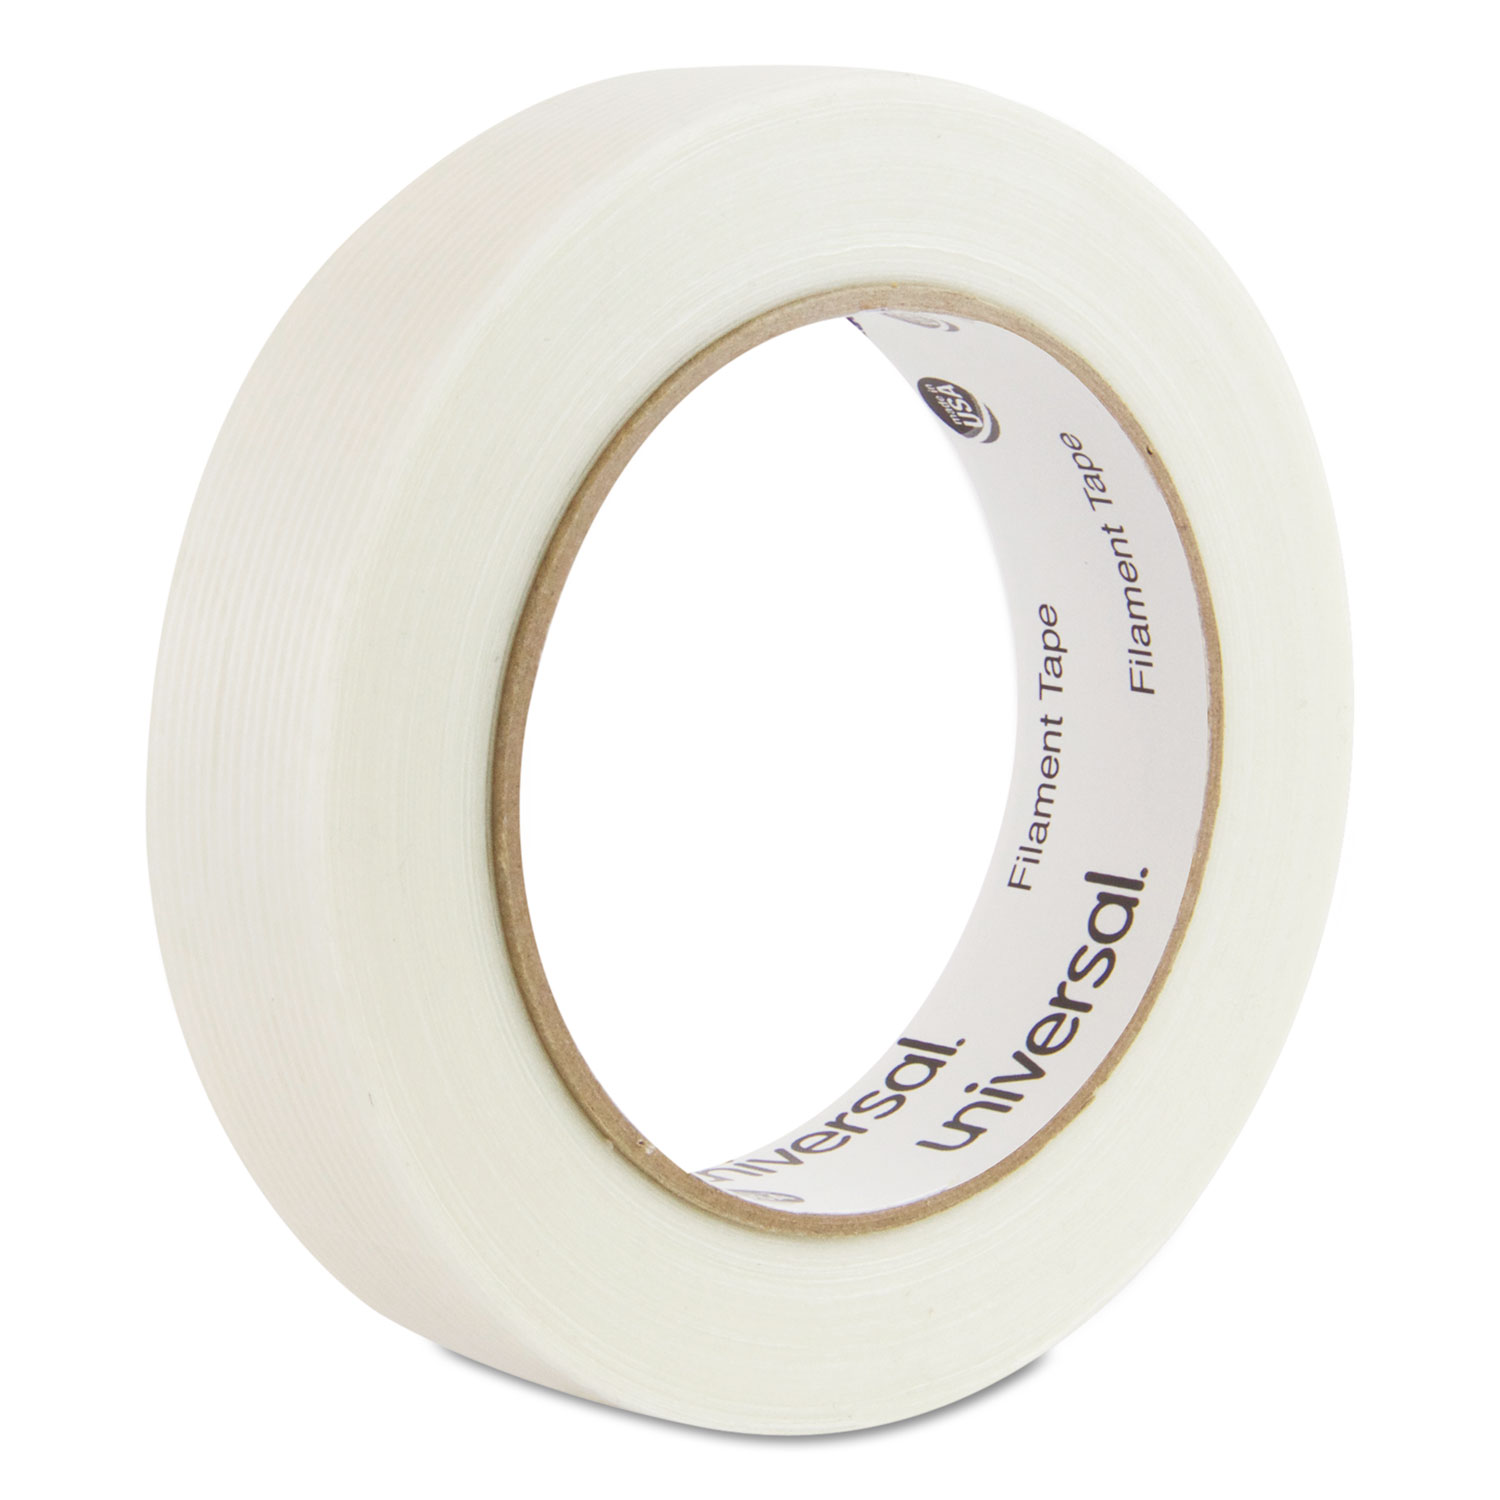  Universal UNV30024 120# Utility Grade Filament Tape, 3 Core, 24 mm x 54.8 m, Clear (UNV30024) 